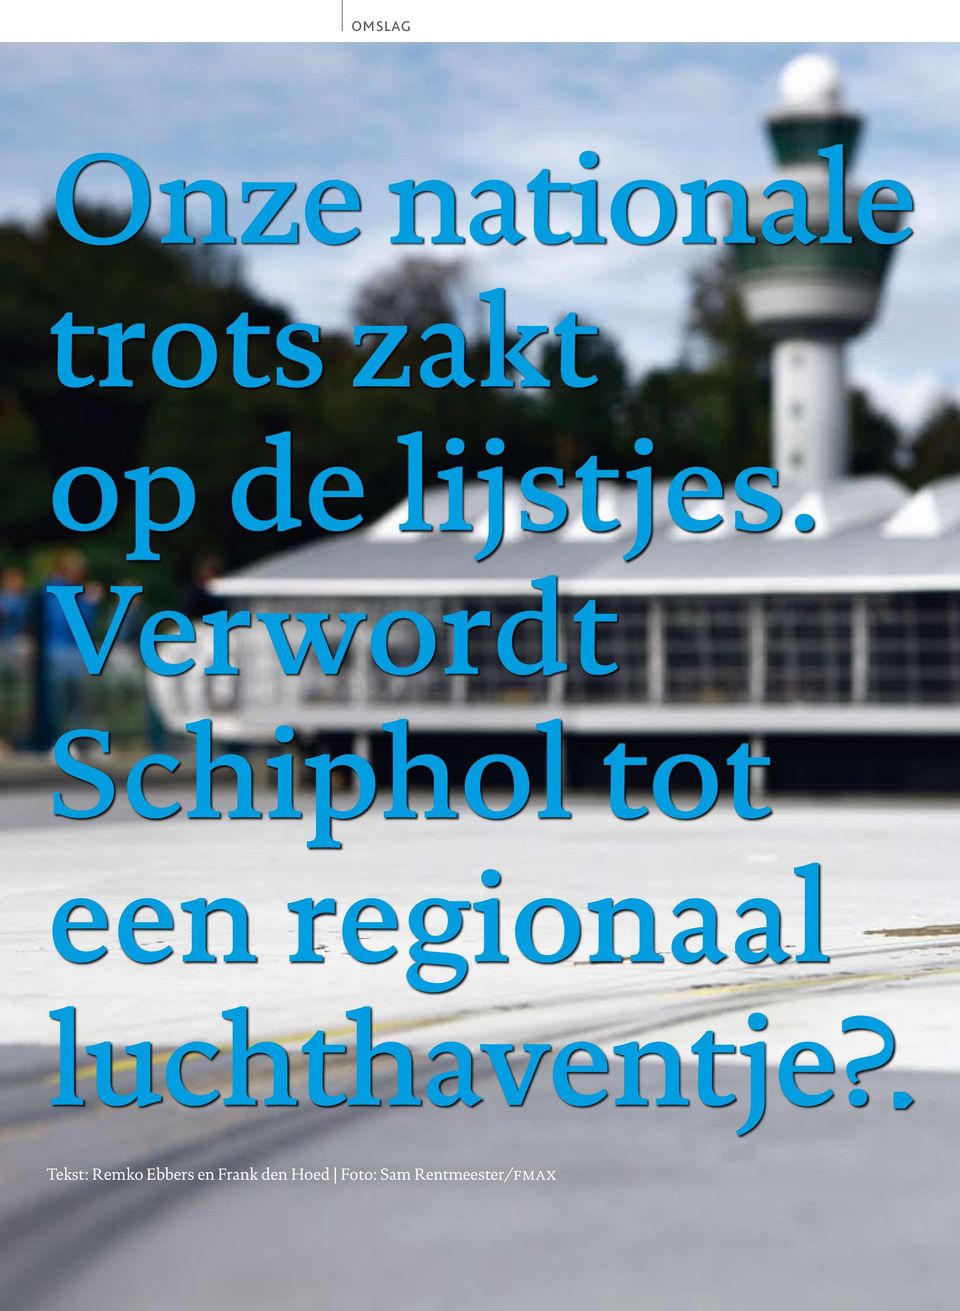 Verwordt Schiphol tot een regionaal